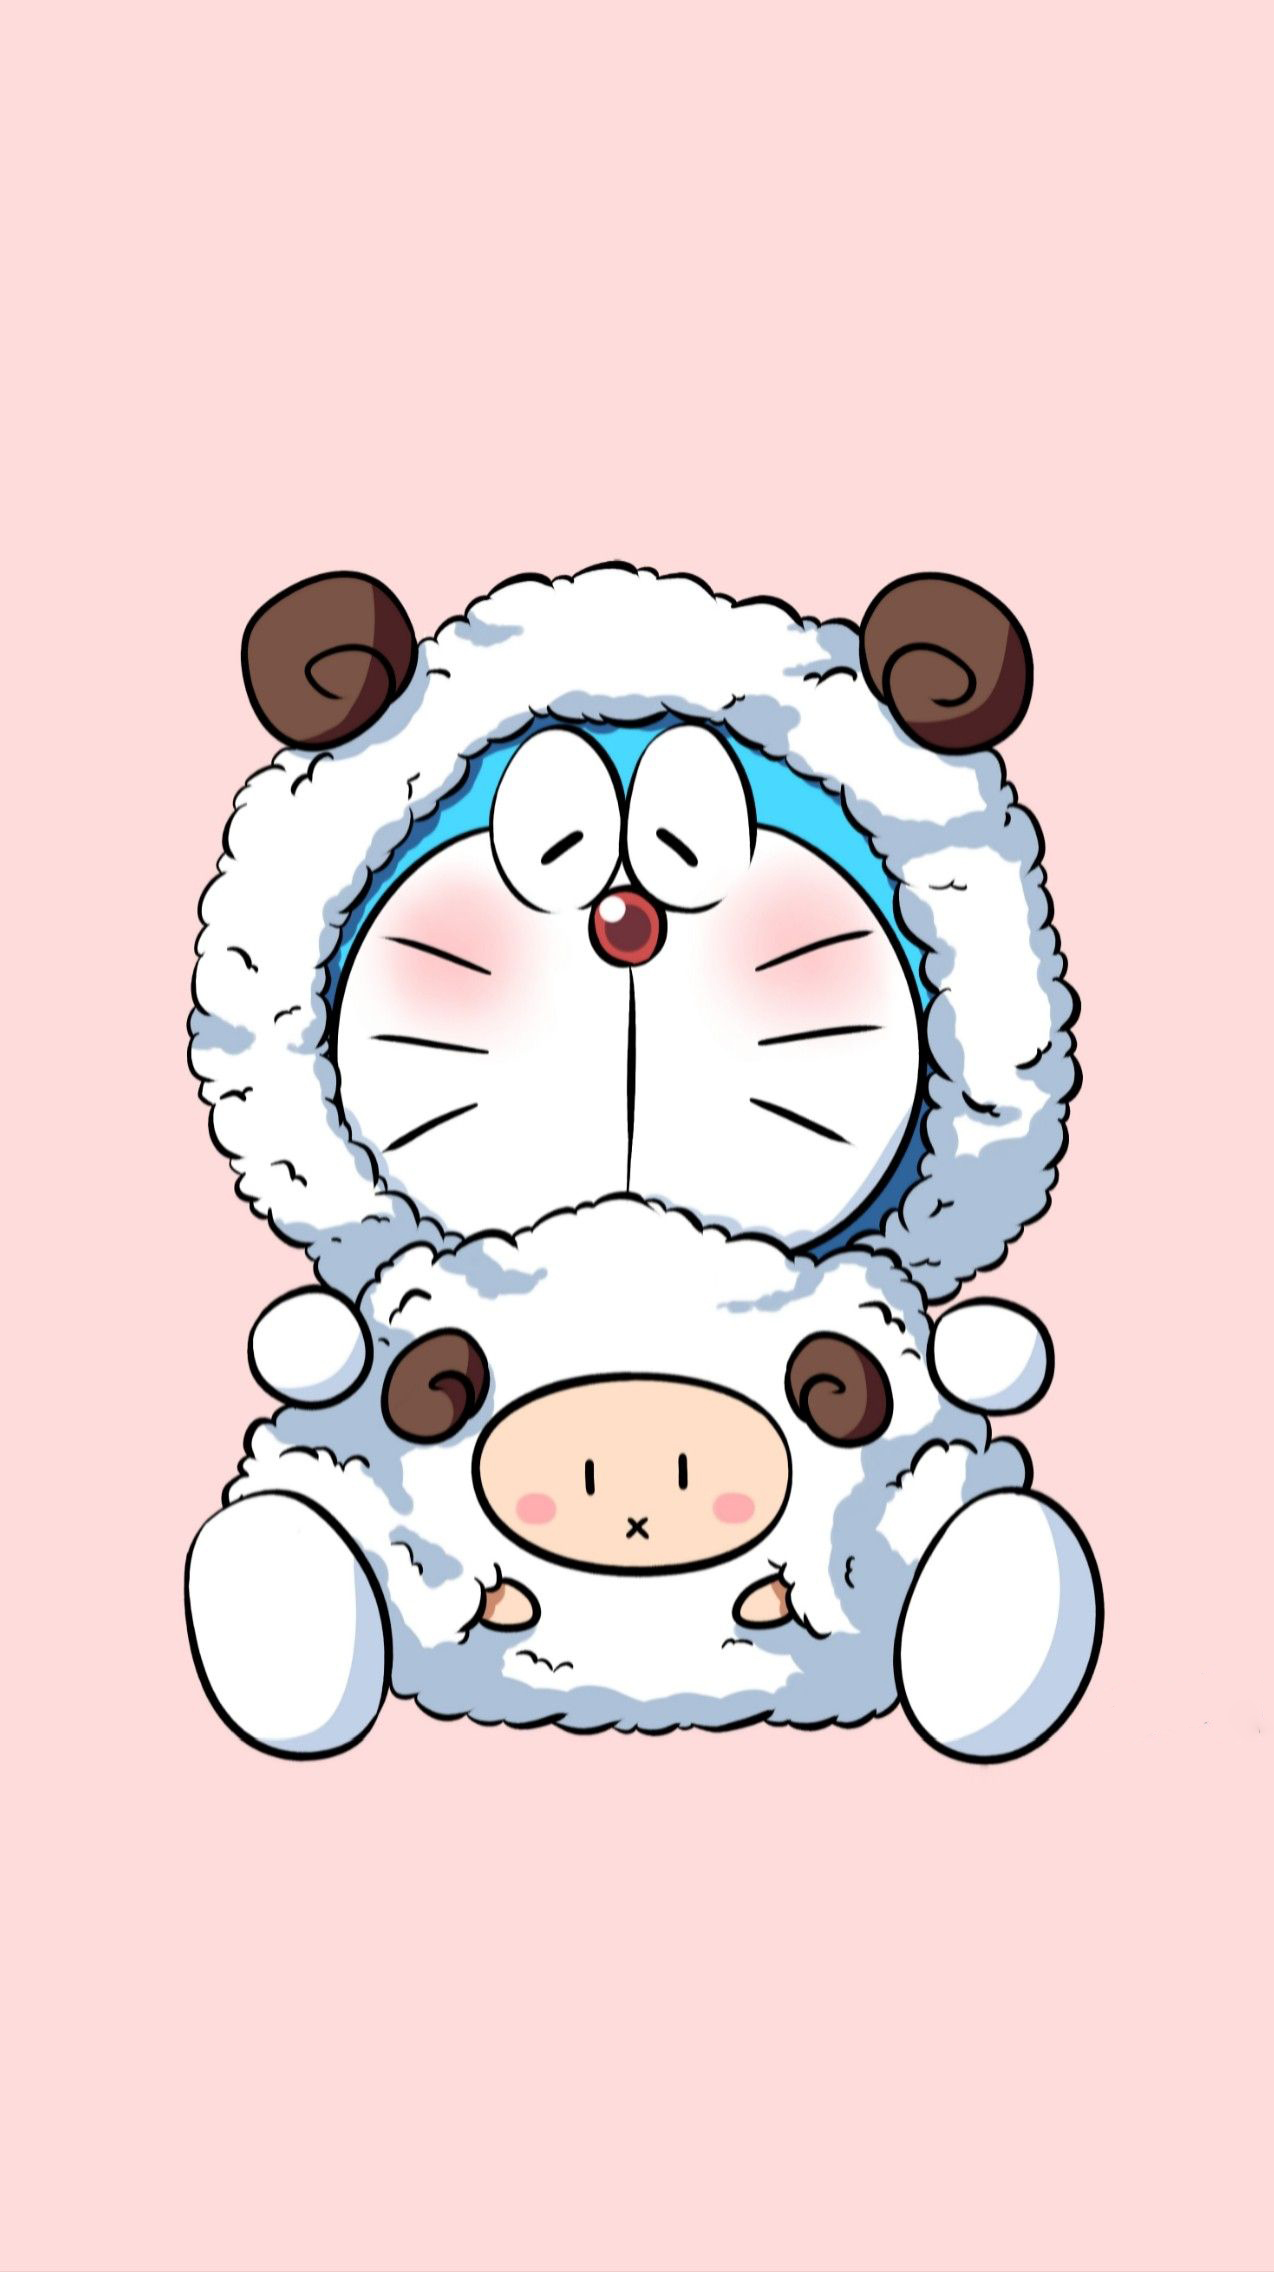 hình ảnh Doremon cute mặc bộ đồ cừu cực dễ thương